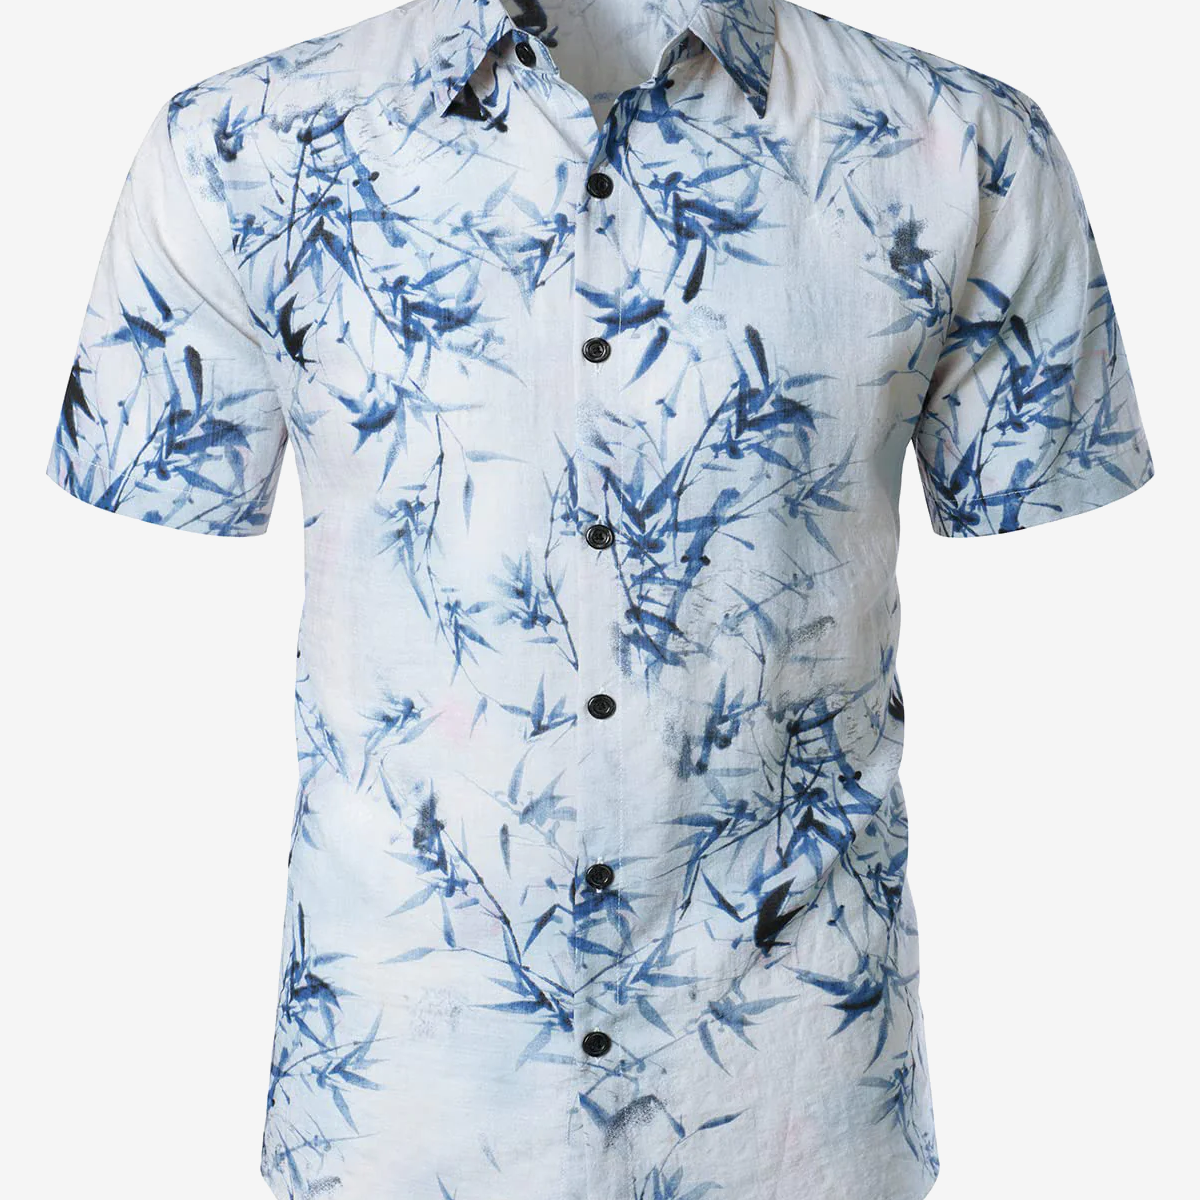 Camisa hawaiana azul claro de manga corta informal de verano con botones y estampado artístico de bambú de algodón para hombre